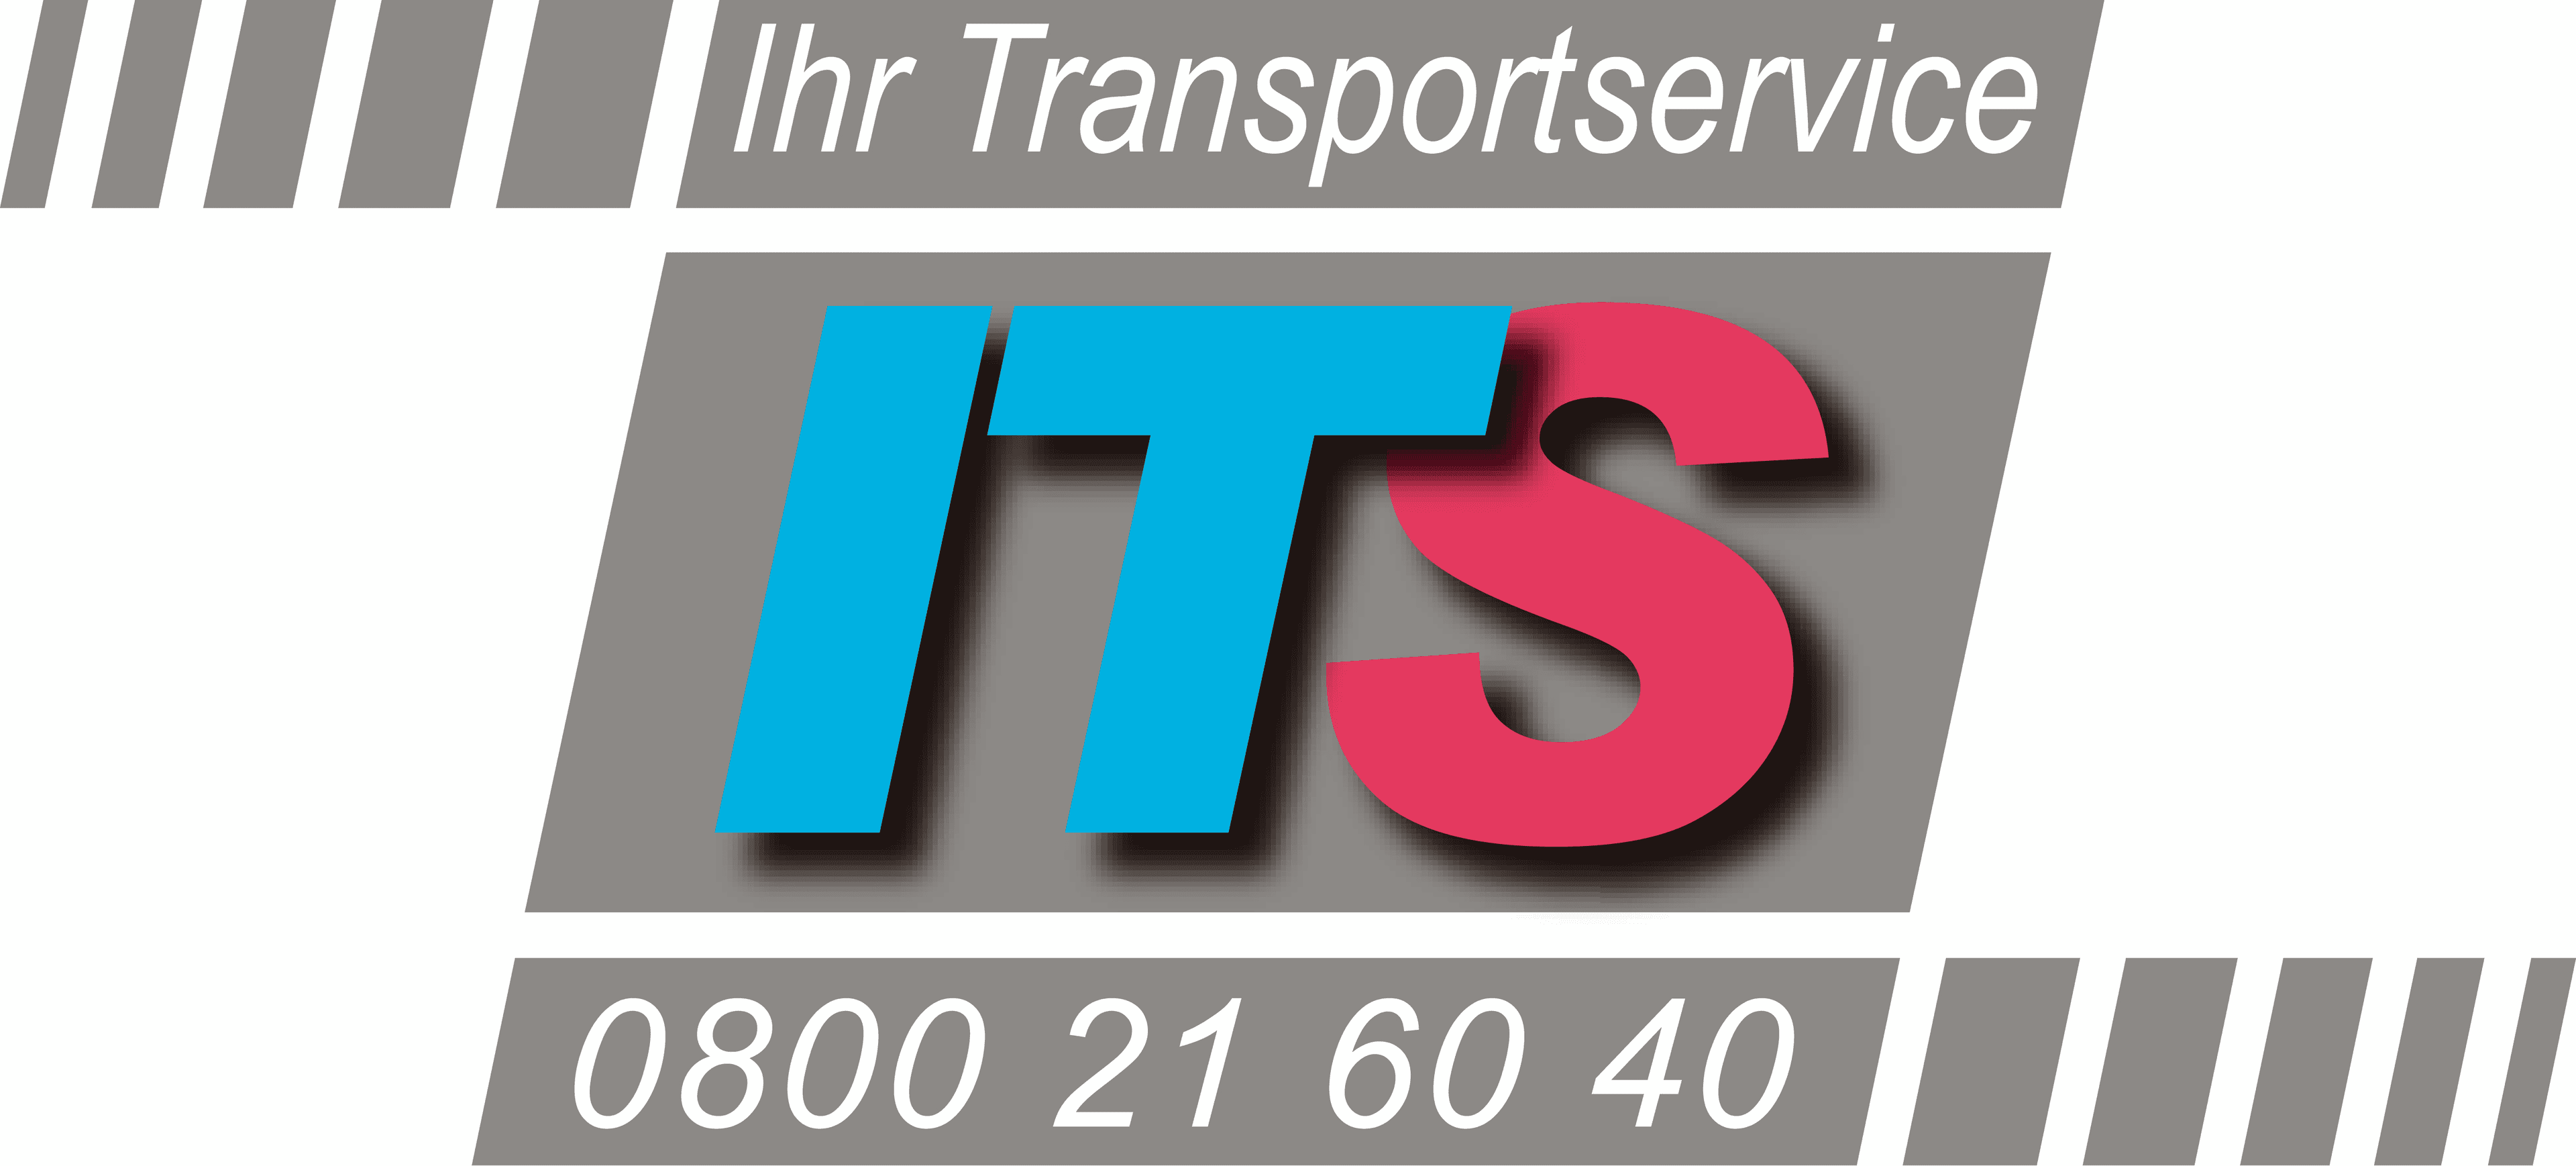 Vorschau - Foto 1 von ITS - Ihr Transportservice Logistik GmbH